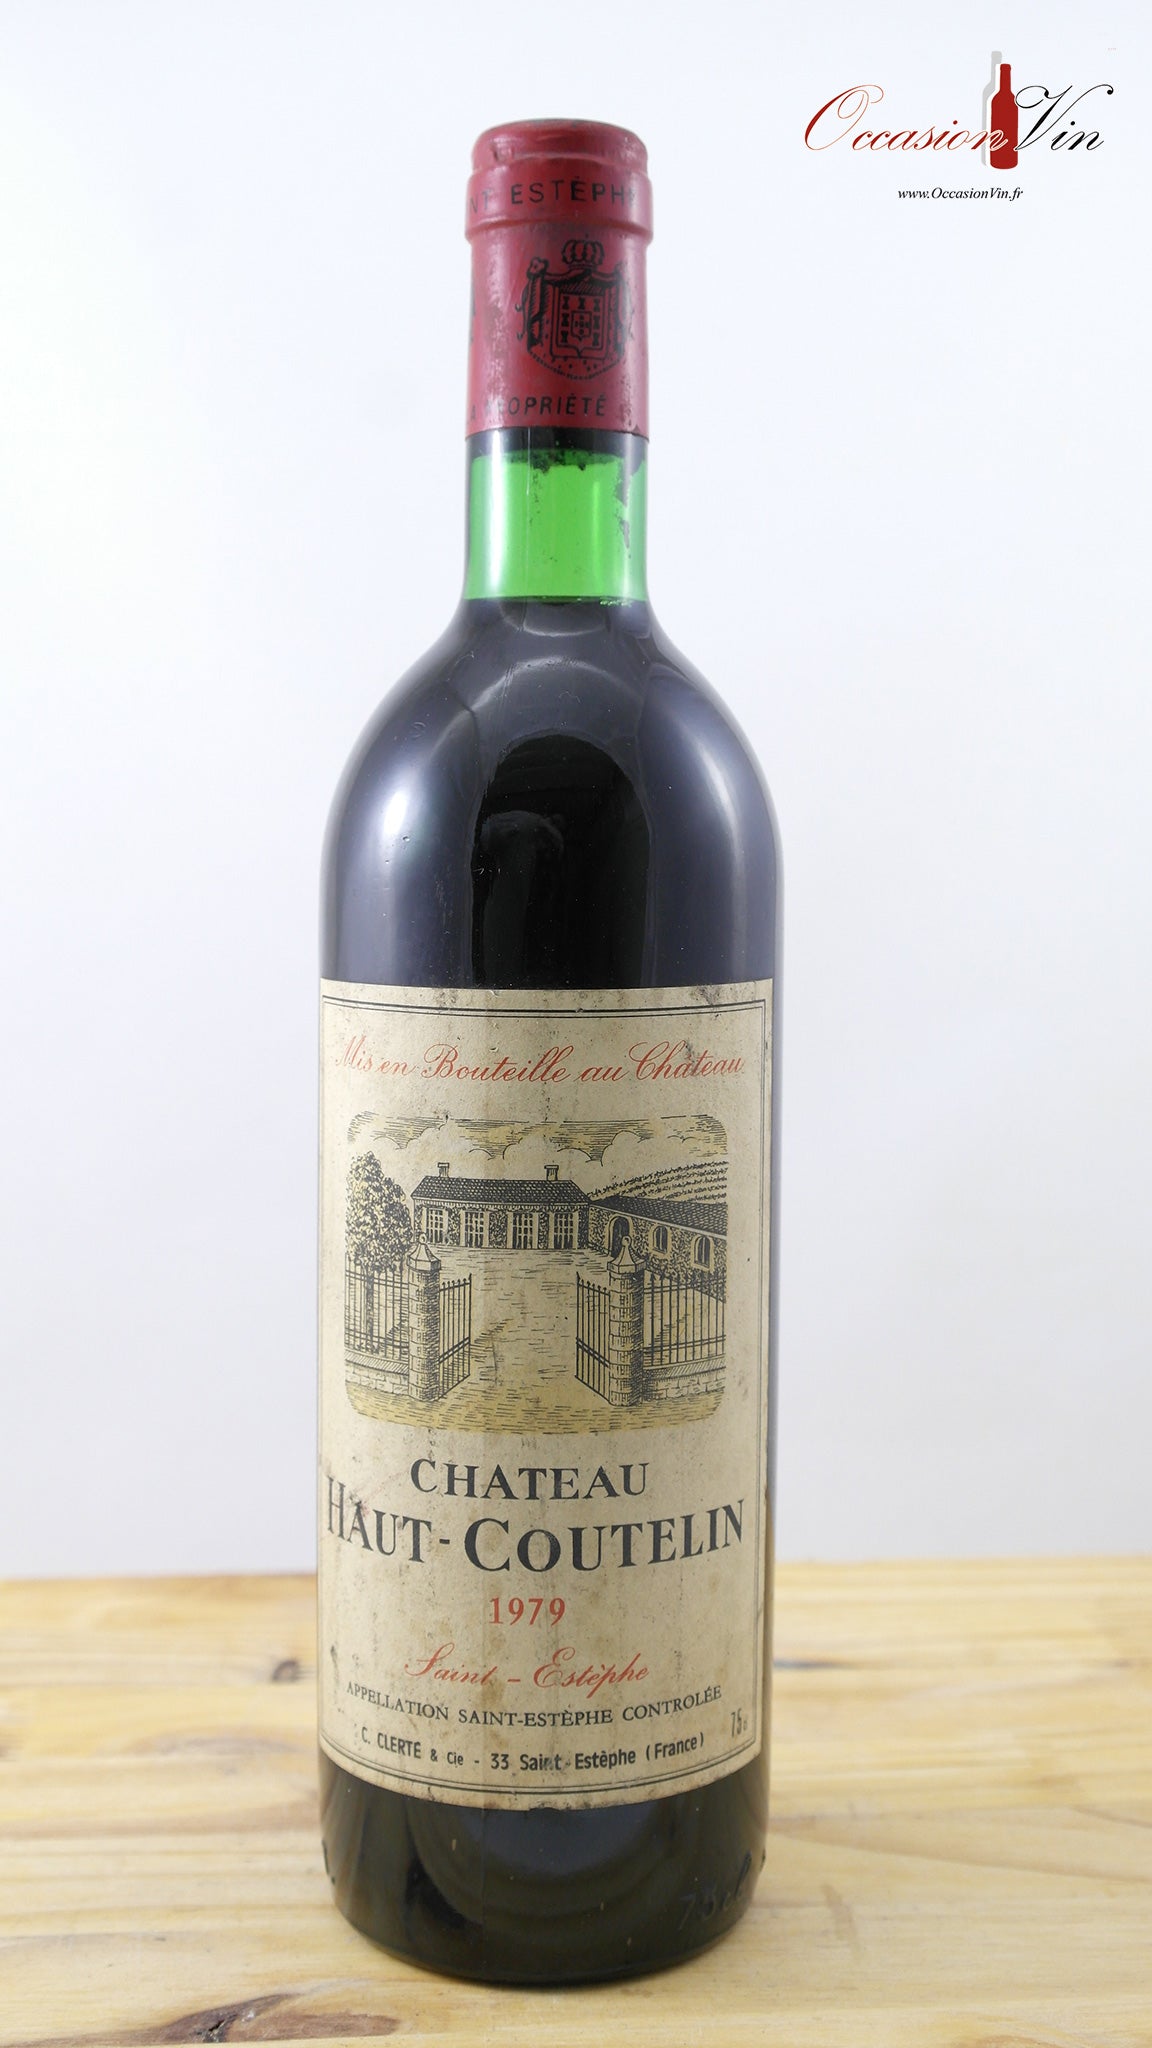 Château Haut-Coutelin Vin 1979